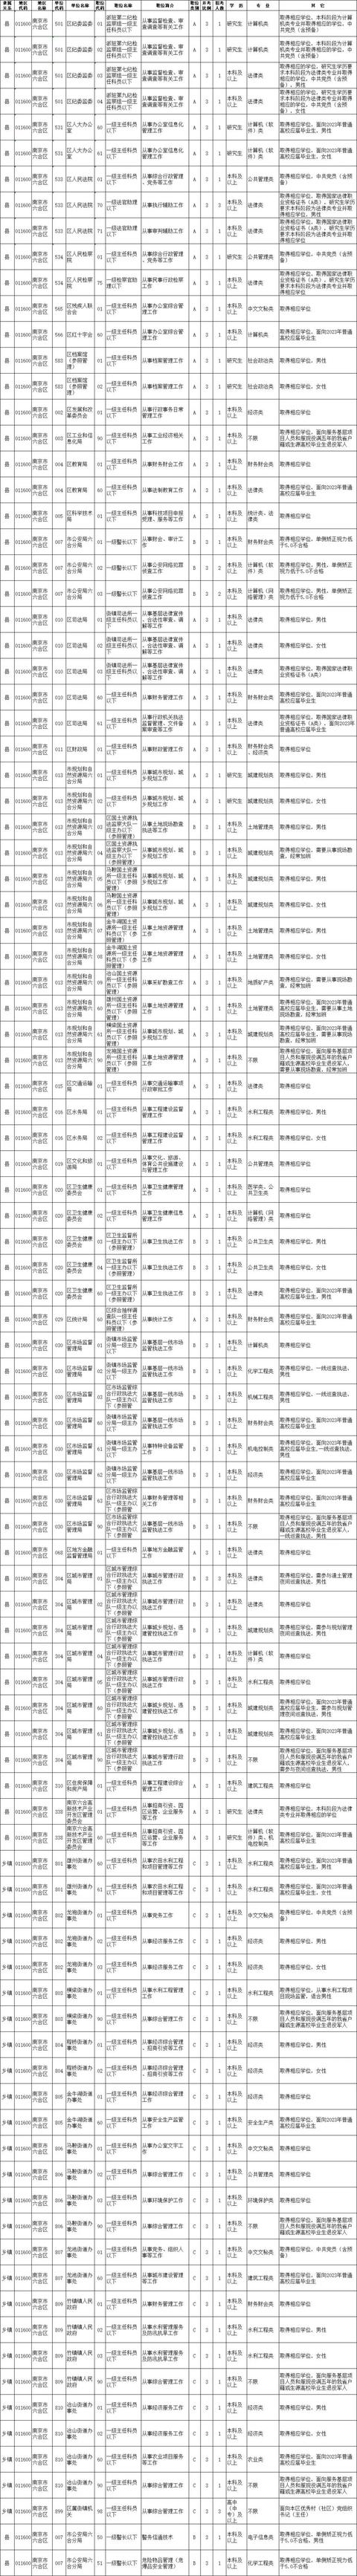 江苏省考公务员2022考试时间表,江苏省考公务员2022职位表一览表(2)